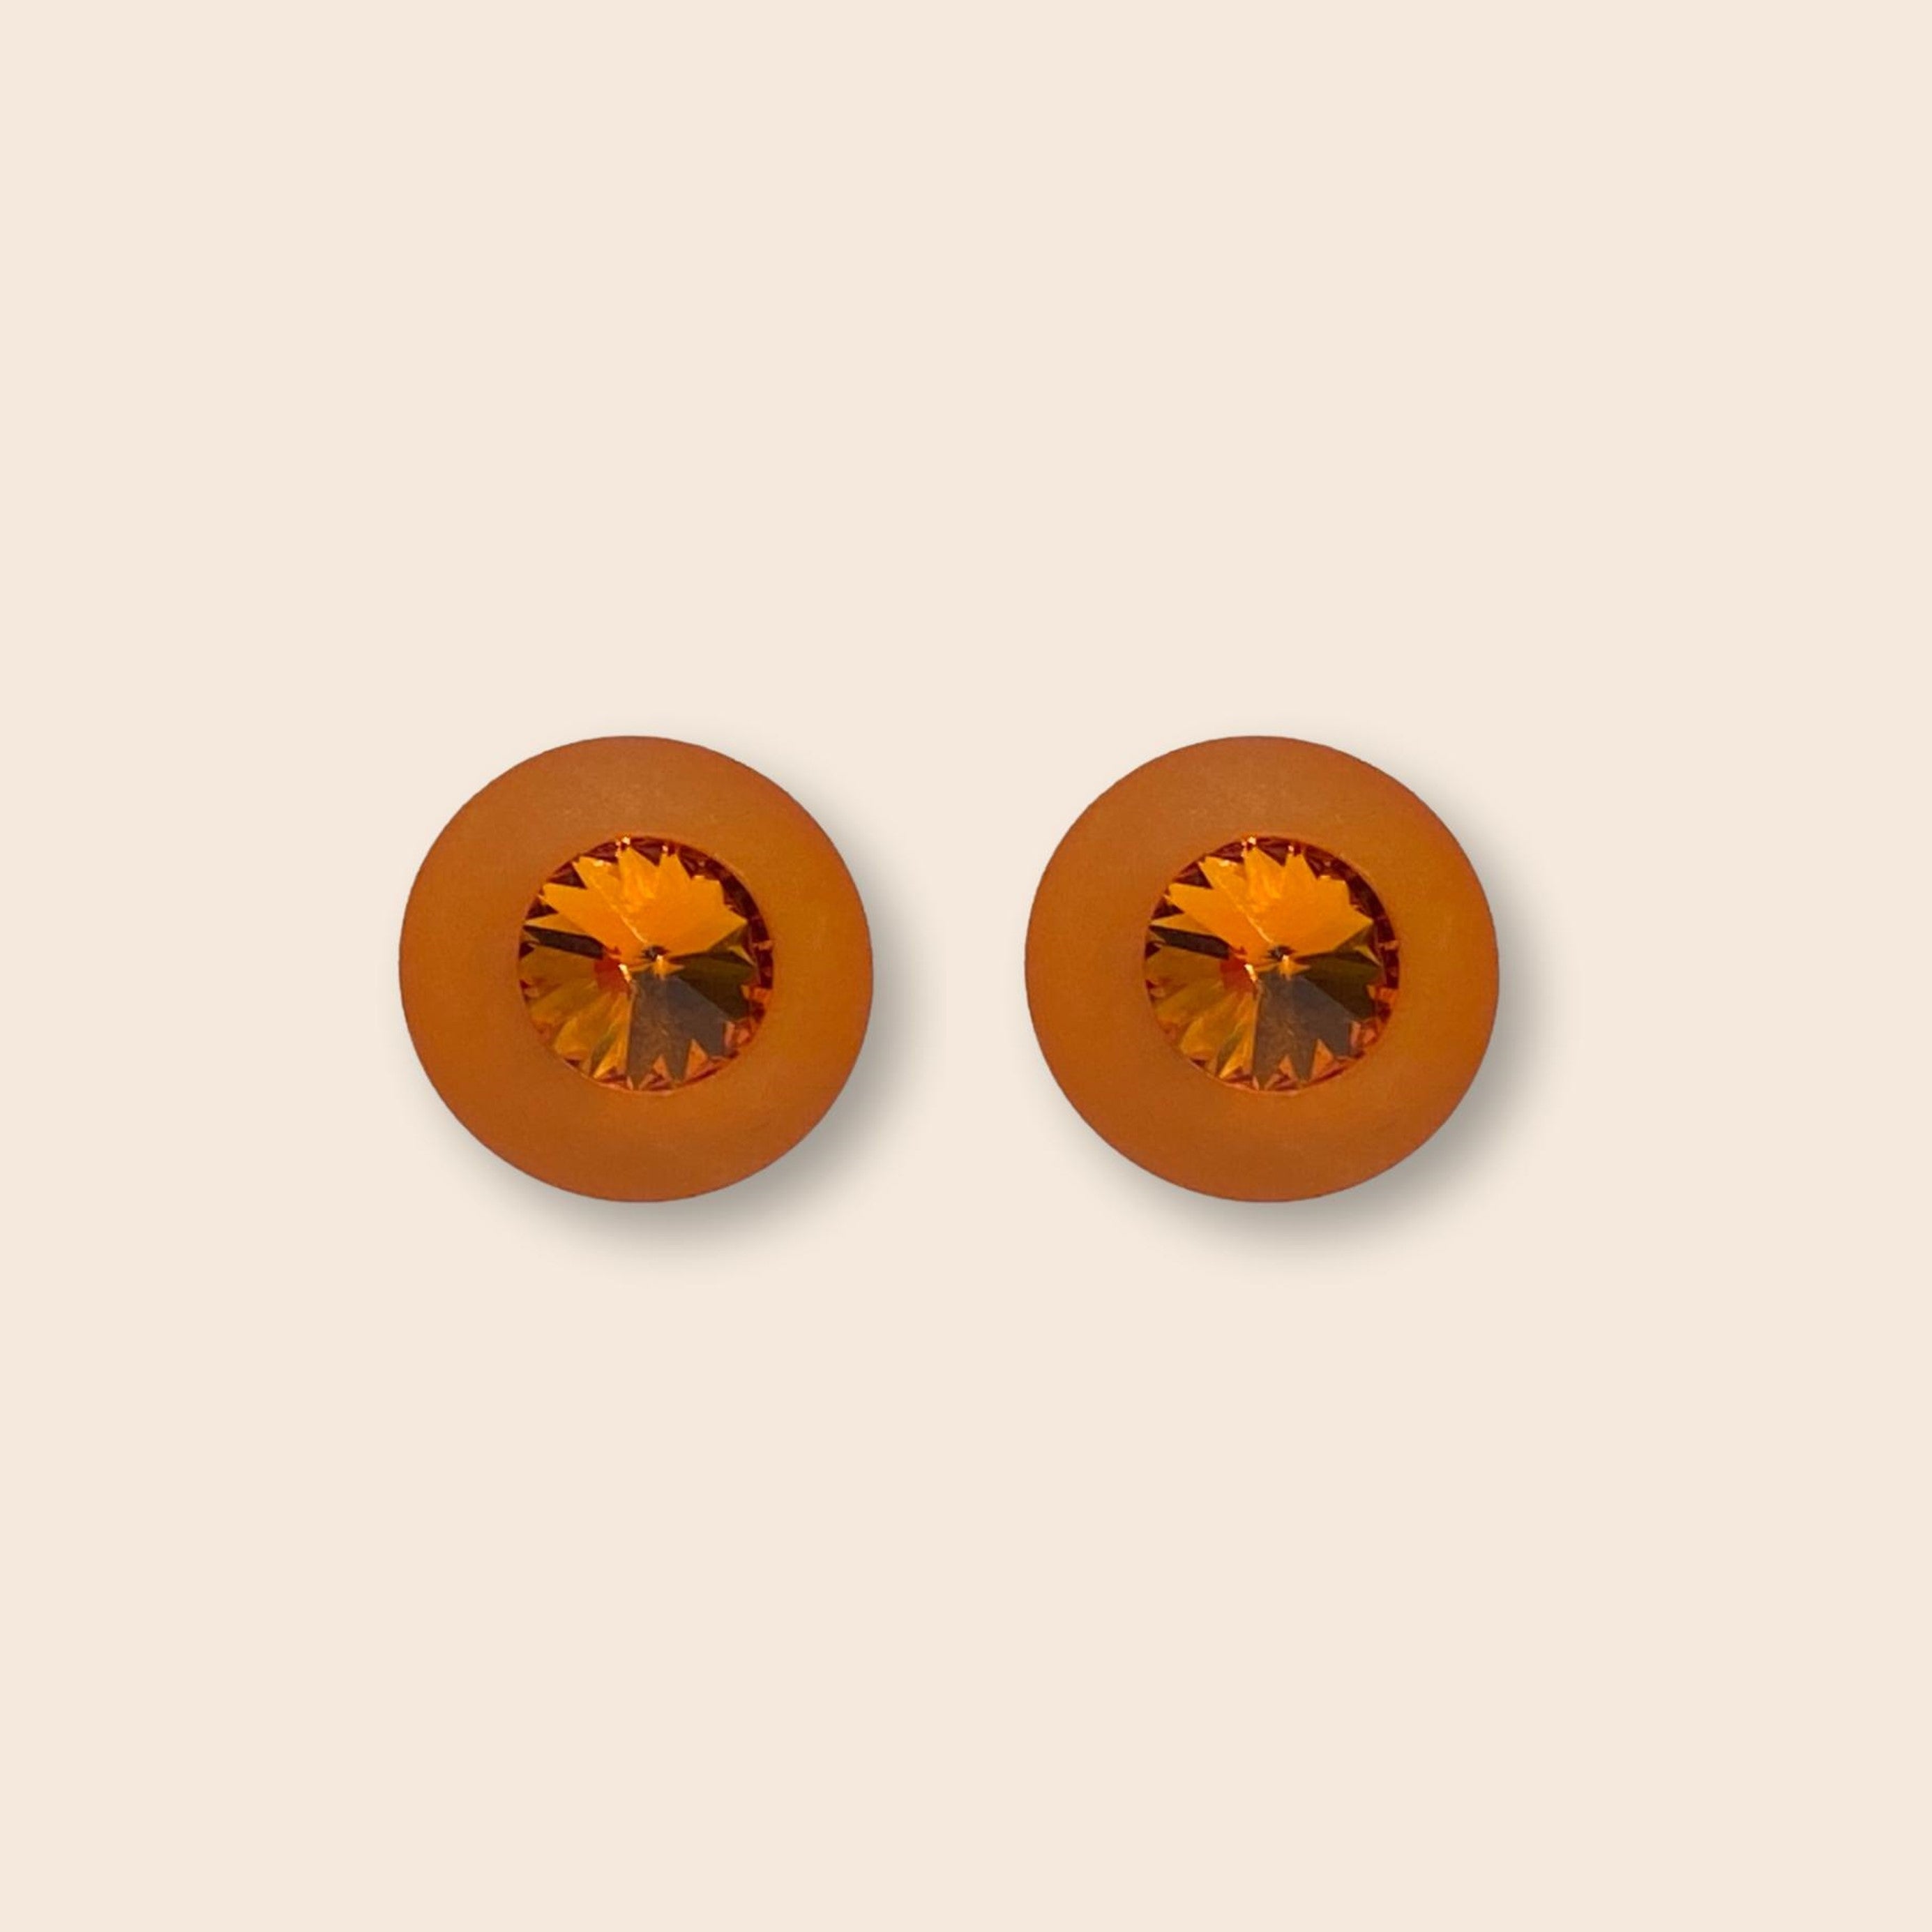 Die großen, kegelförmig geschliffenen Swarovski-Steine machen unsere Sassari-Ohrstecker zu einem absoluten Blickfang! Sie setzen tolle, auffällige Farbakzente und verbreiten Stil und Lebensfreude pur. Orange steckt voller Energie, denn die Farbe verbindet die Wärme von Rot und das Strahlen von Gelb. Orange ist eine extravagante und extrovertierte Farbe, die sich sehr gut für besondere Akzente eignet.